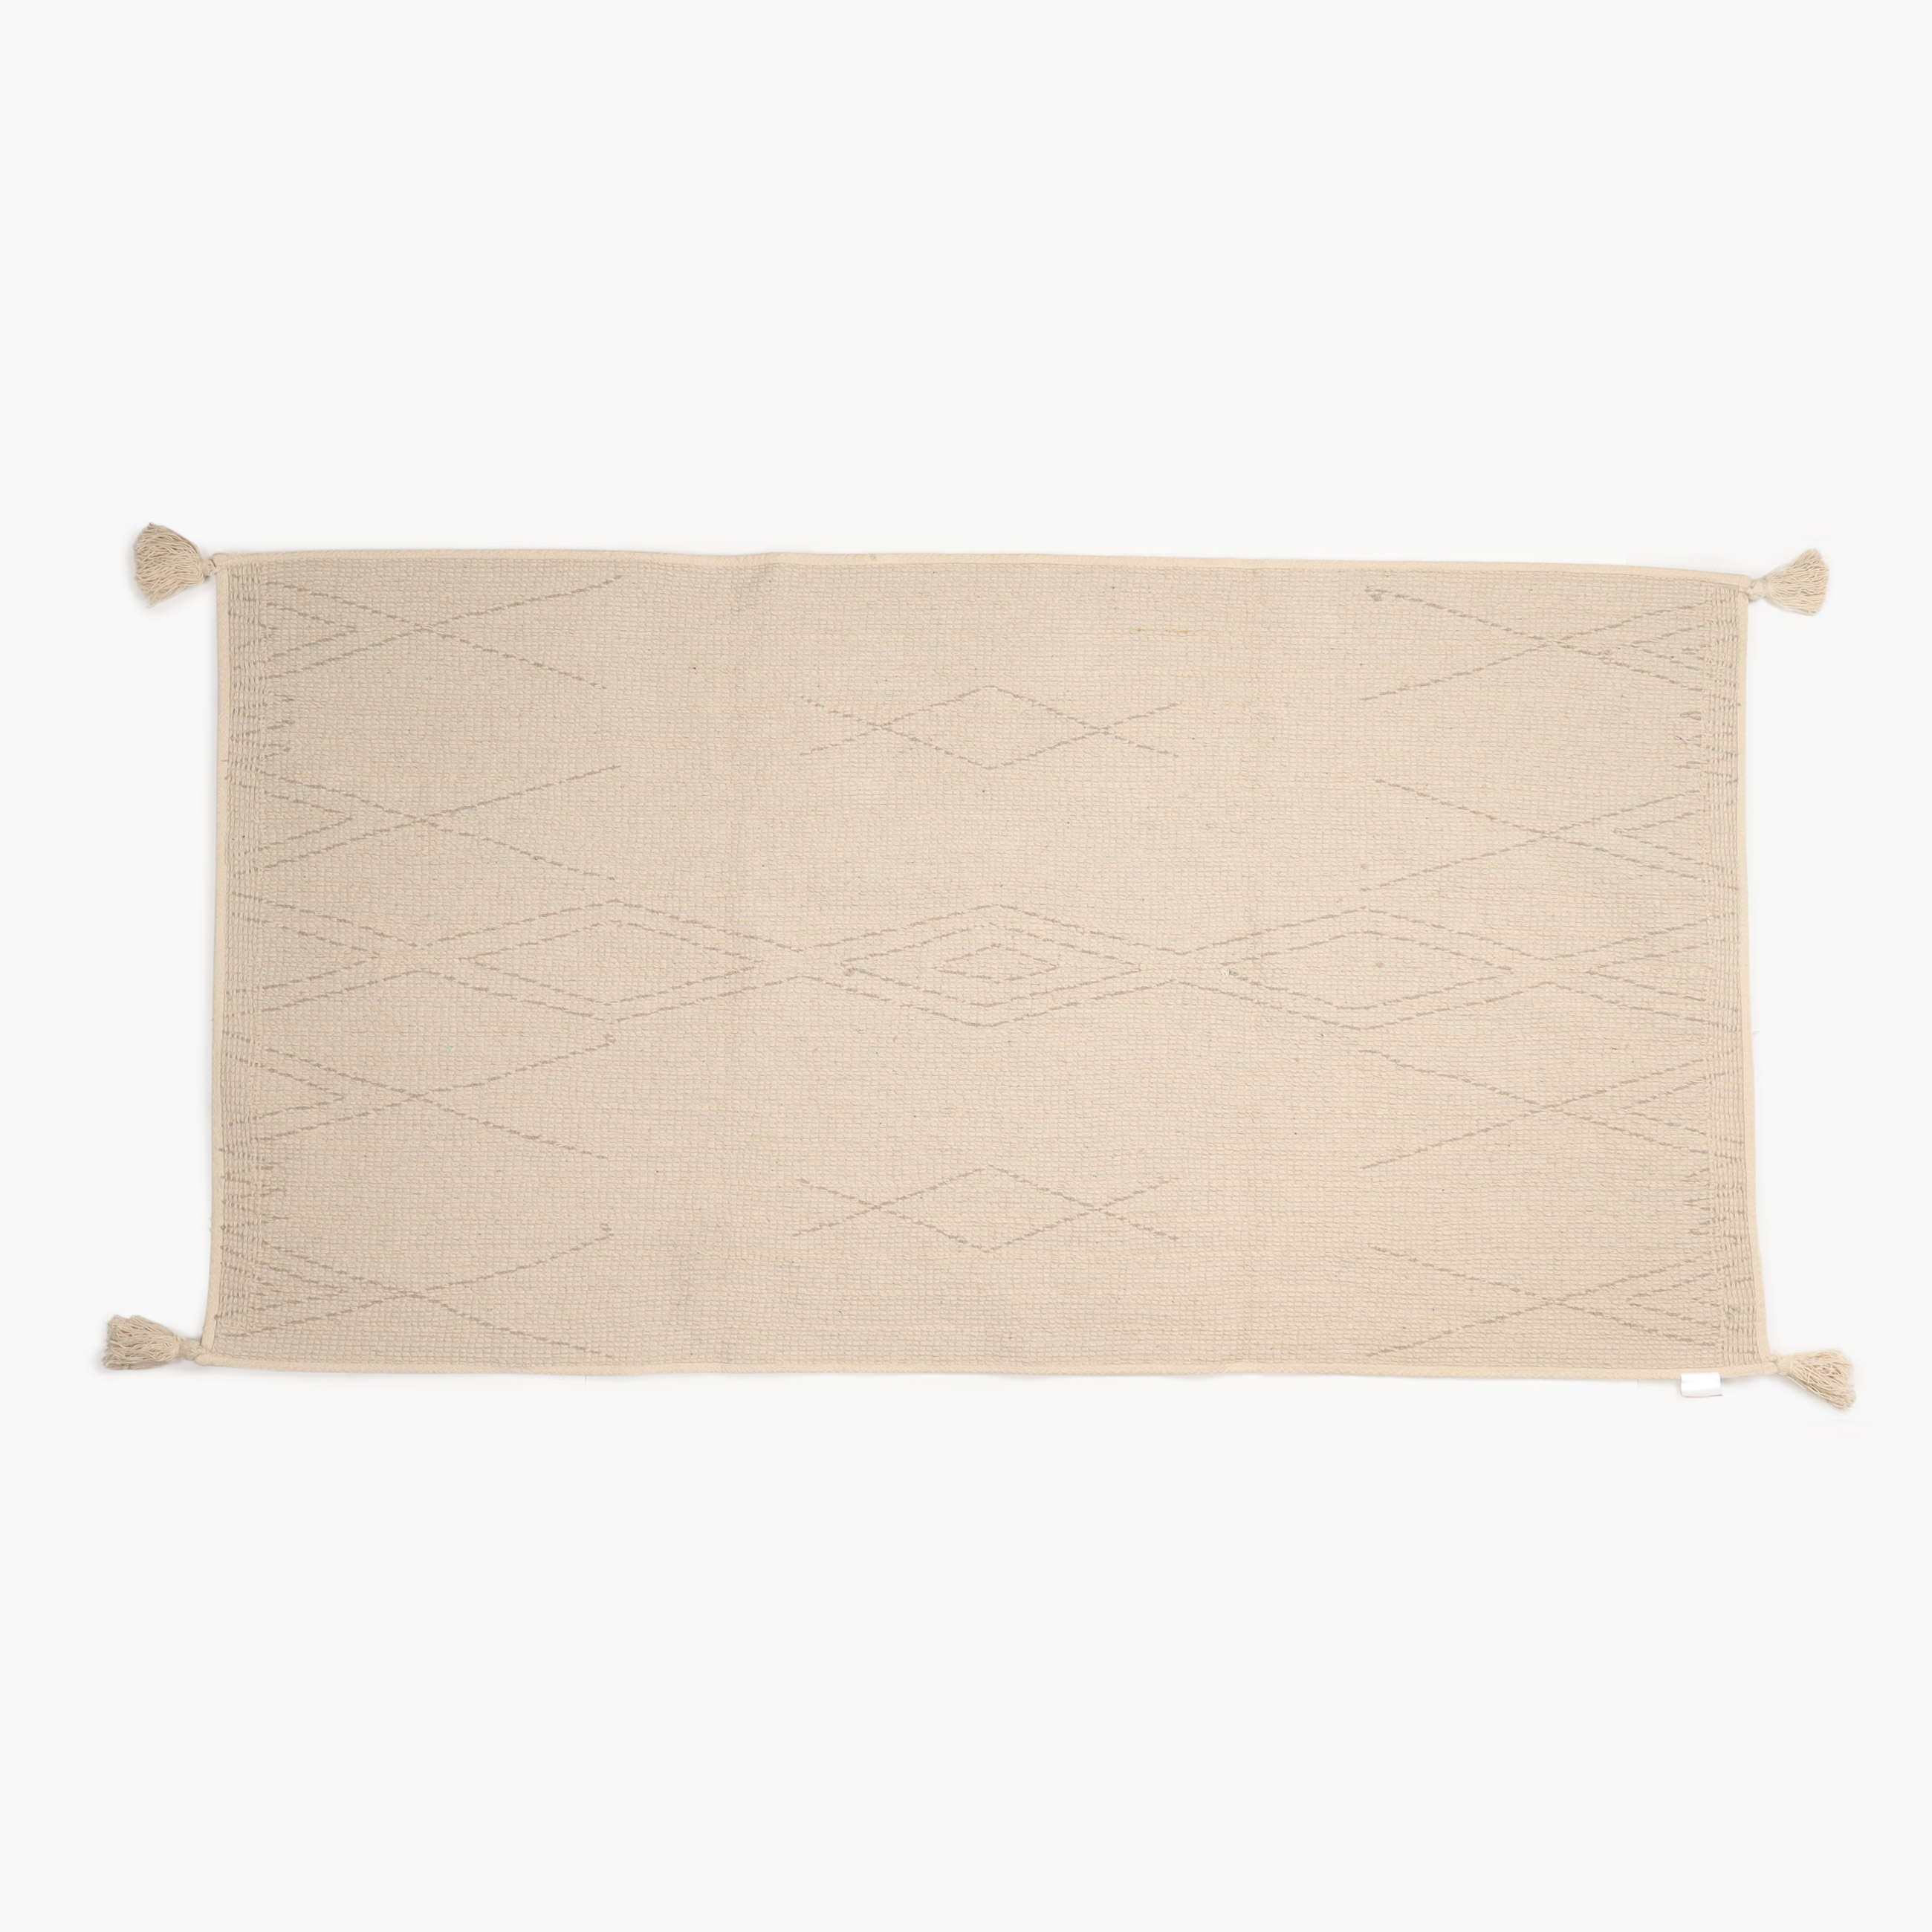 Коврик, 80x150 см, с кисточками, хлопок, песочный, Ромбы, Rhombic изображение № 3